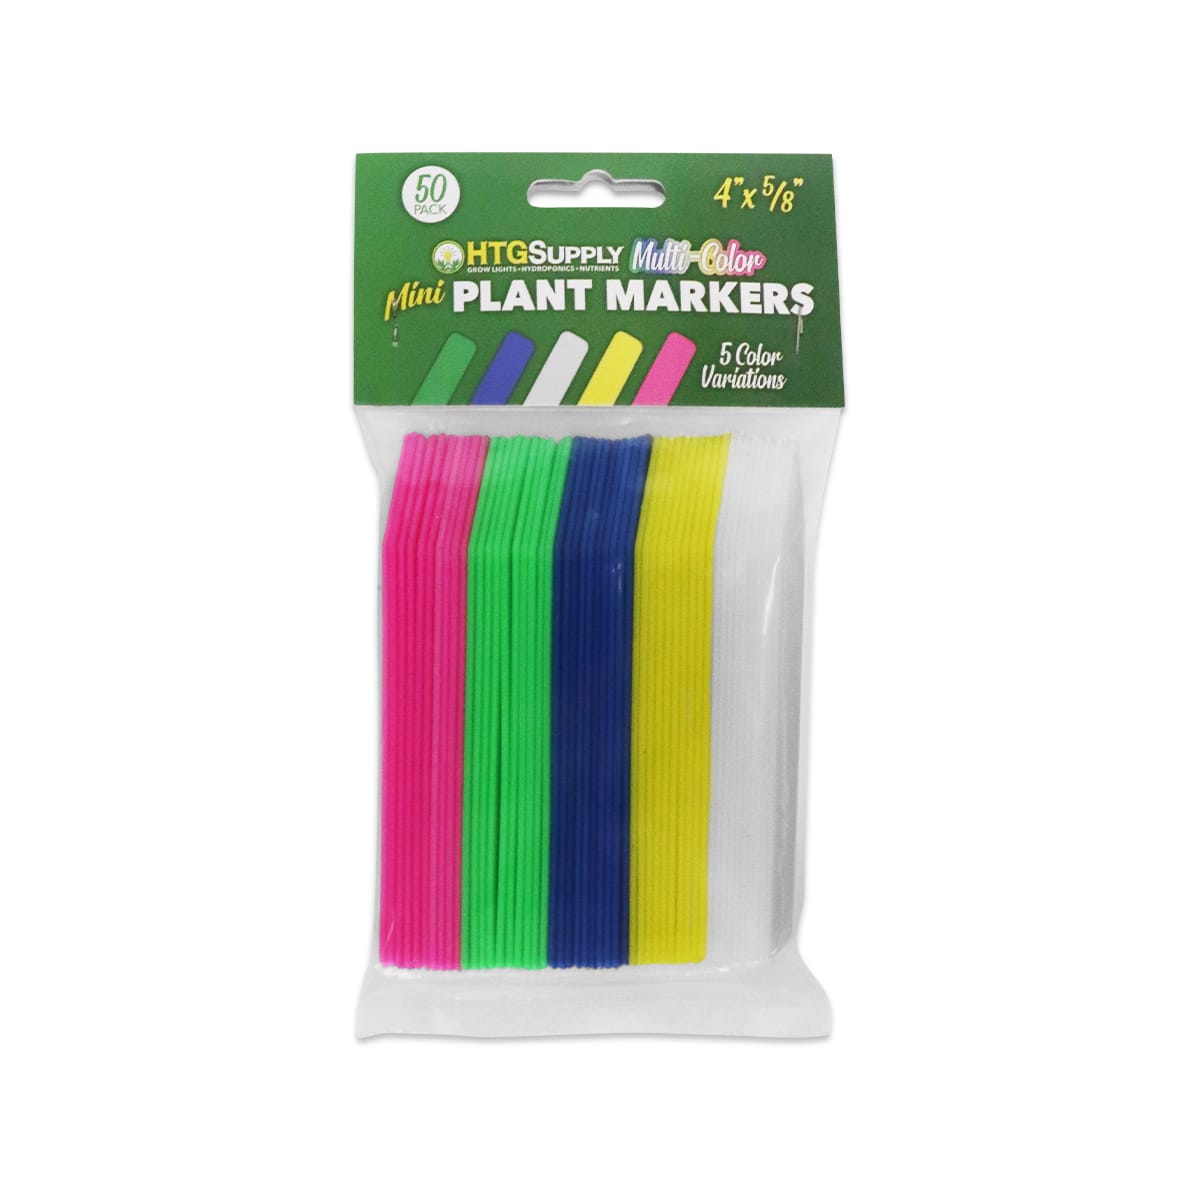 Plastic Plant Labels - Multi-Color